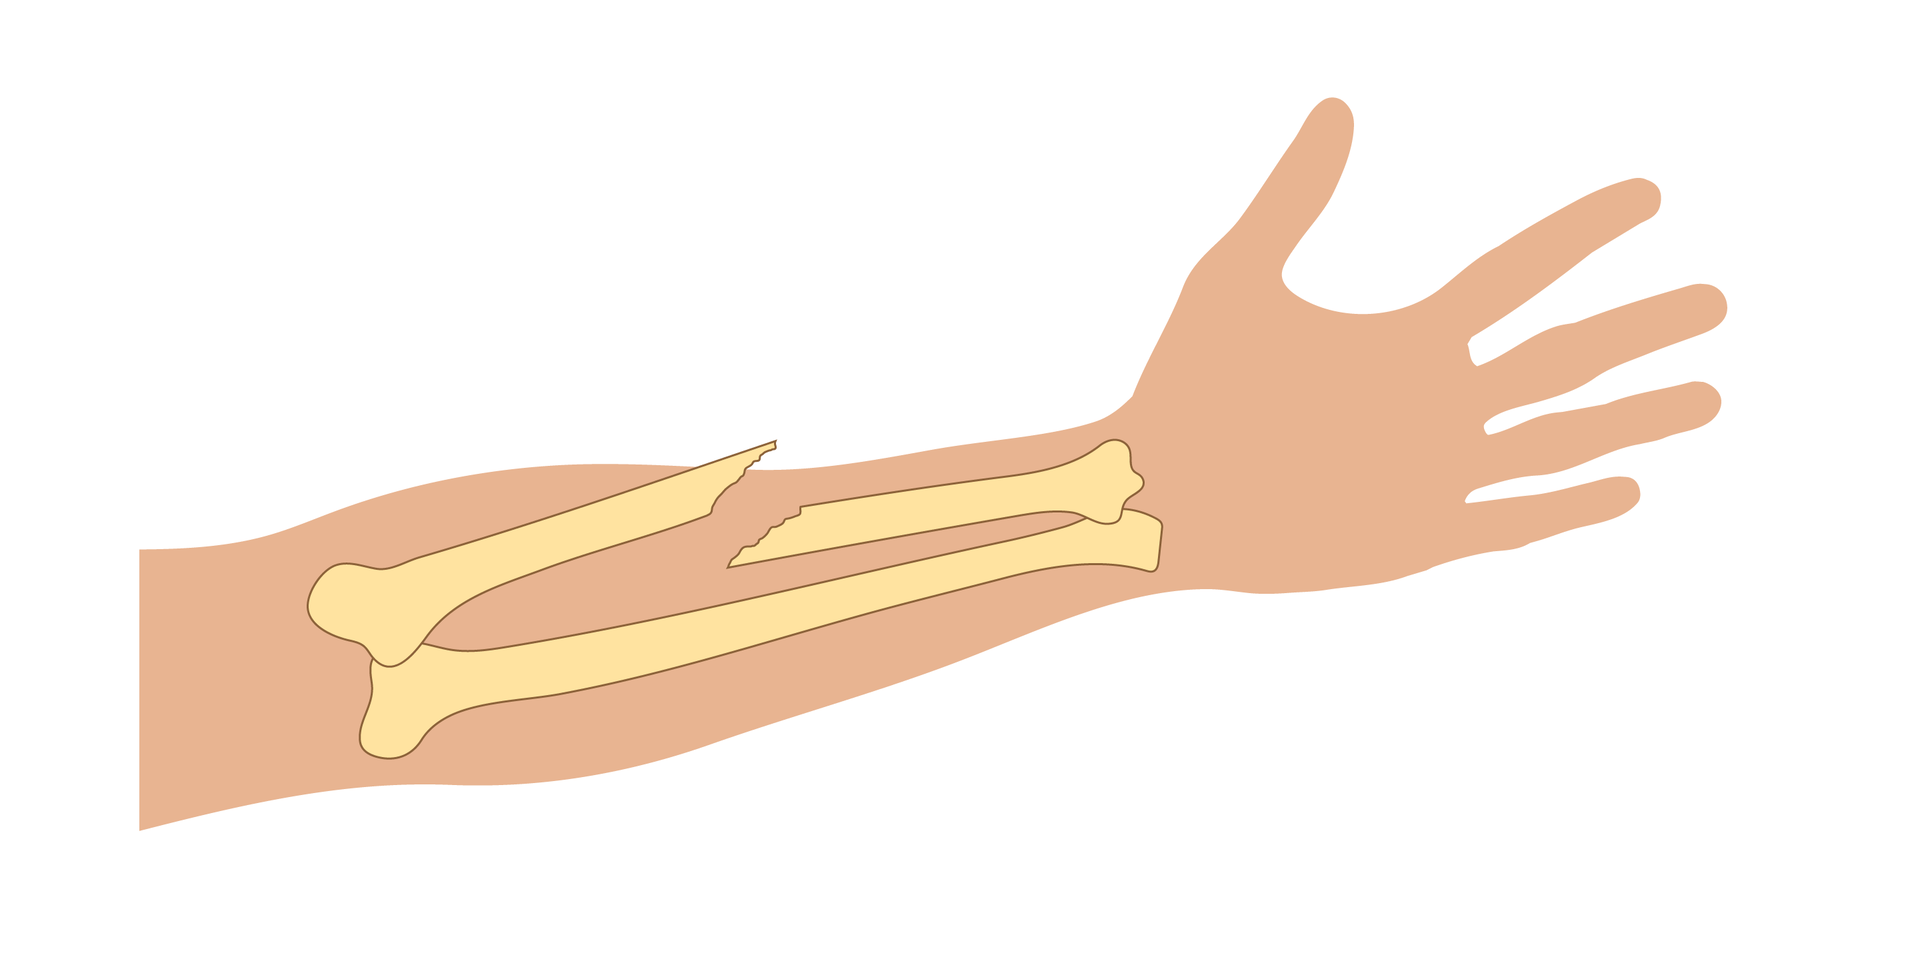 Ilustracja przedstawia zarys przedramienia prawej ręki skierowany wyprostowanymi palcami w prawą stronę. Na ilustrację naniesiono schematyczne rysunki kości przedramienia ułożone równolegle do siebie. Przykład przedstawia złamanie przebiegające pod kątem ostrym do krawędzi kości. Ostro zakończony koniec kości przebija skórę i wystaje poza ciało.